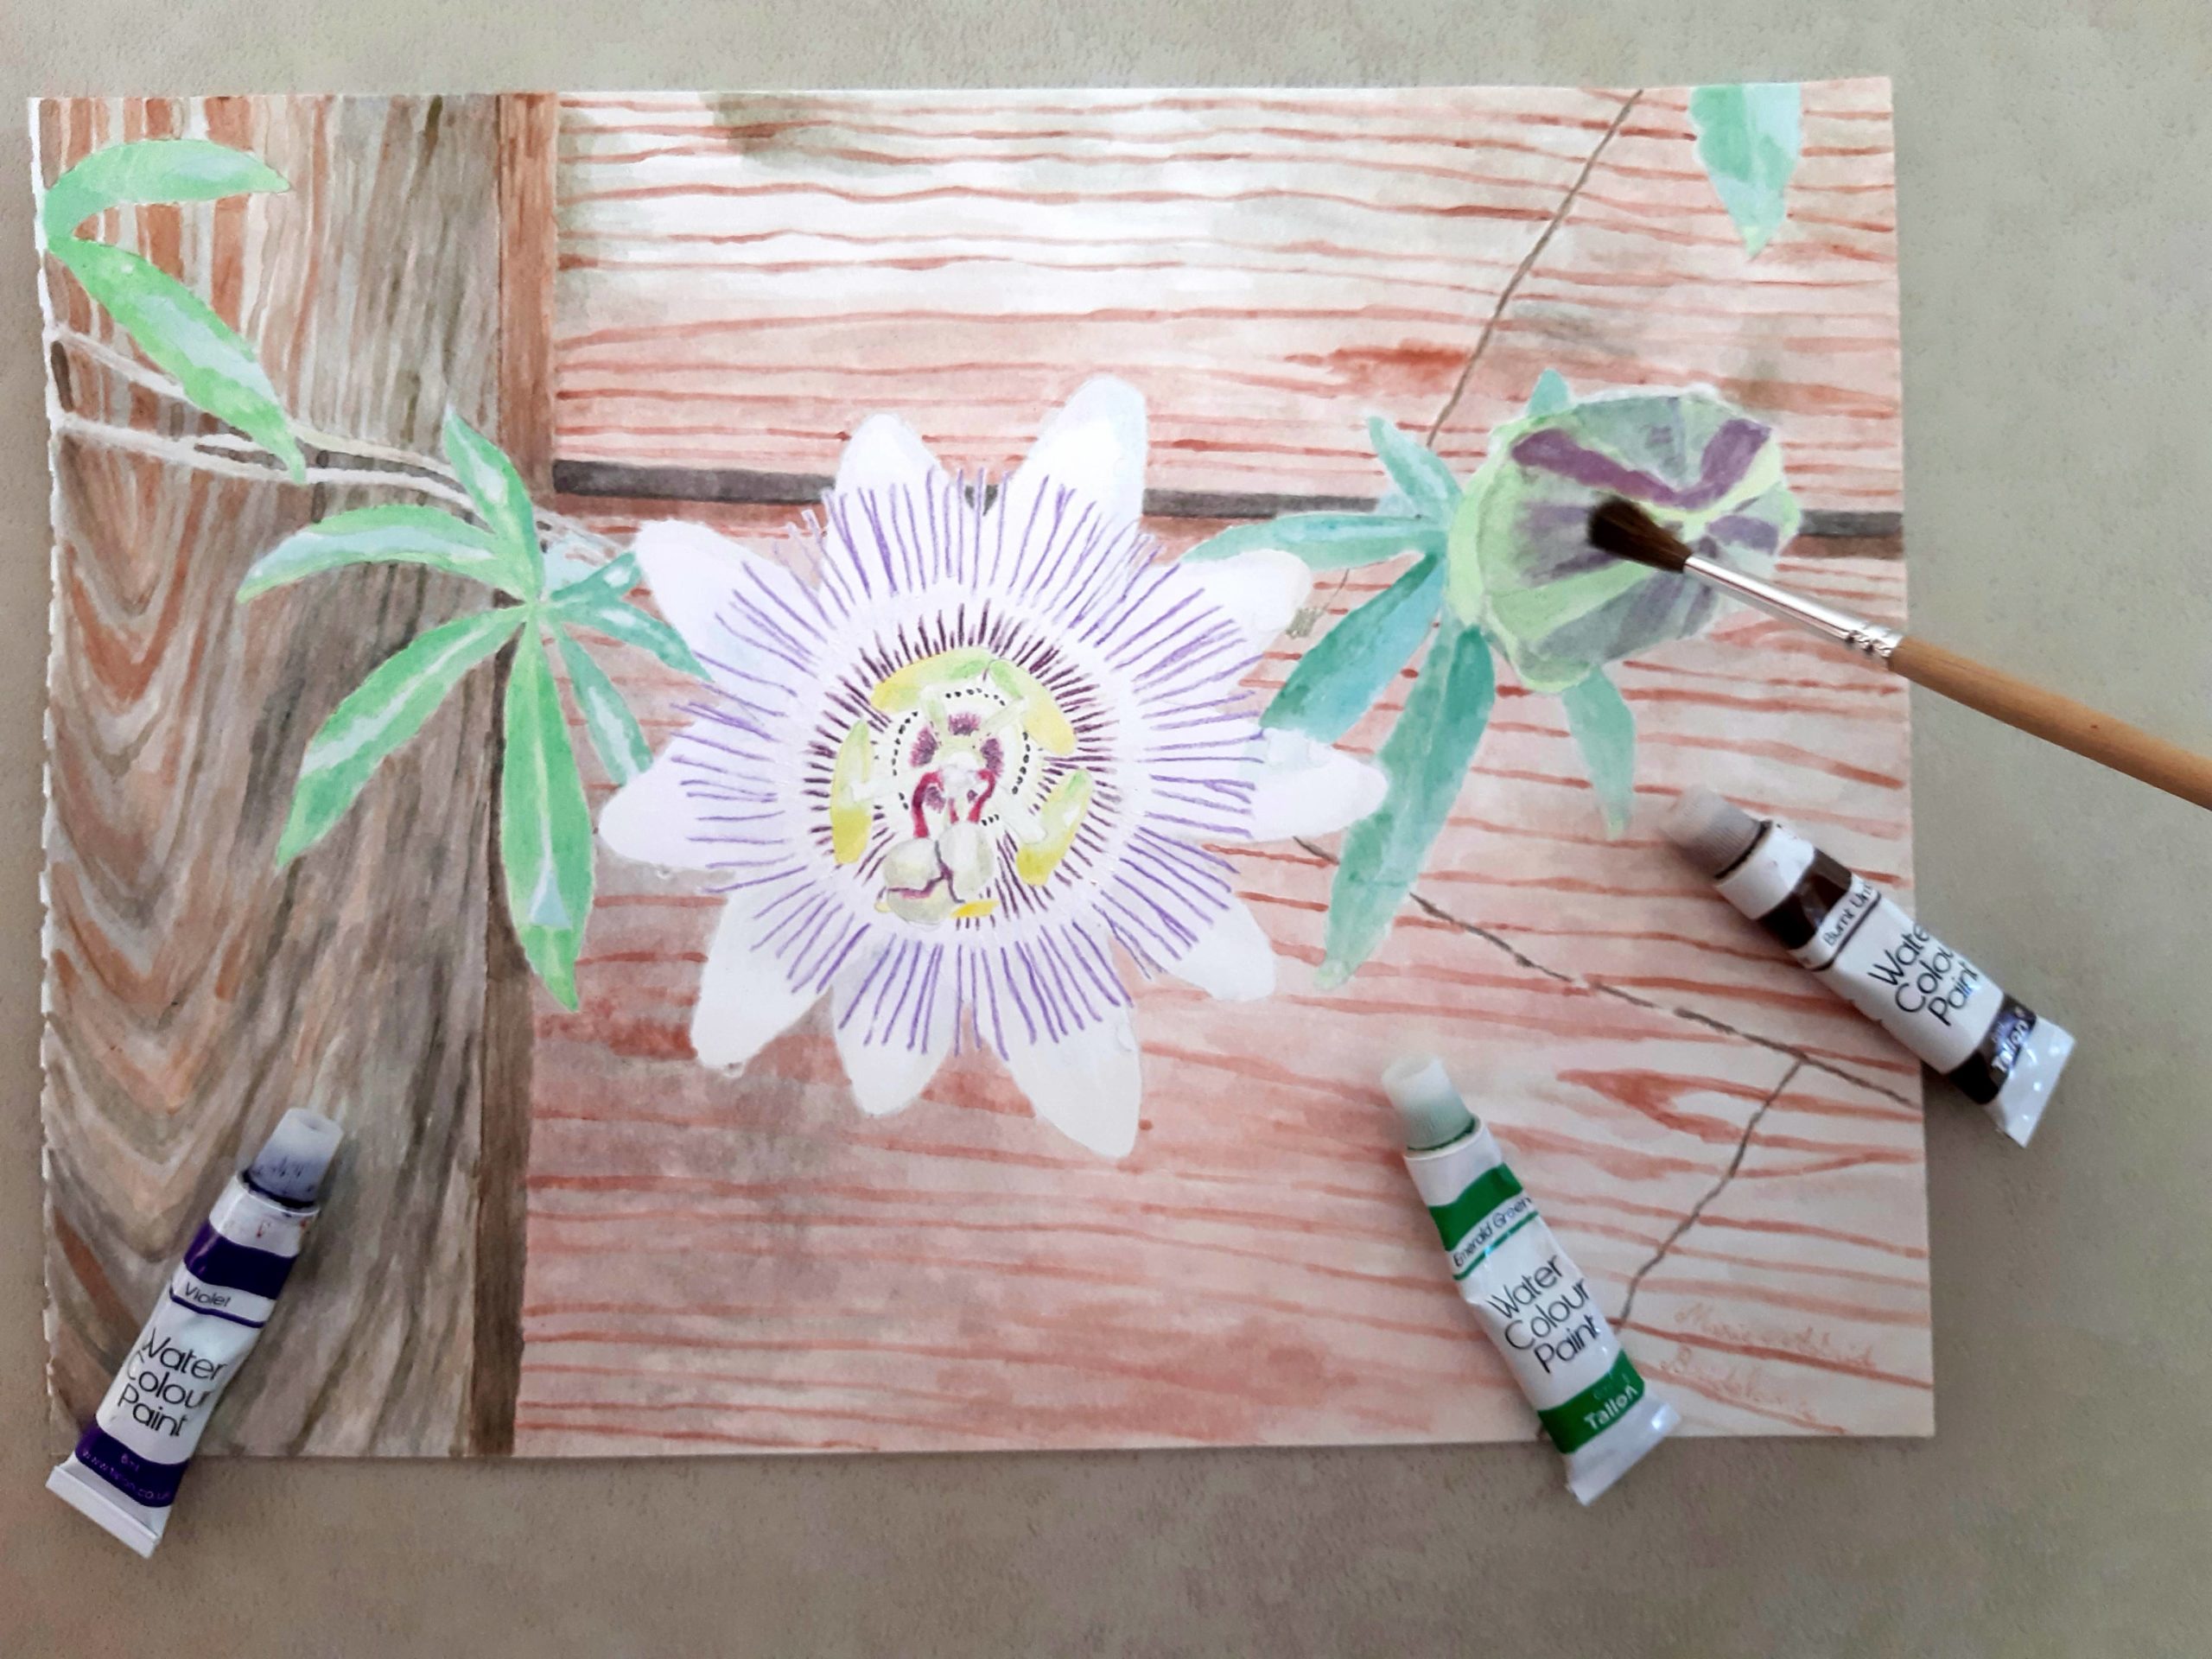 Mes premiers pas à l'aquarelle : fleur de passiflore sur une barrière en bois